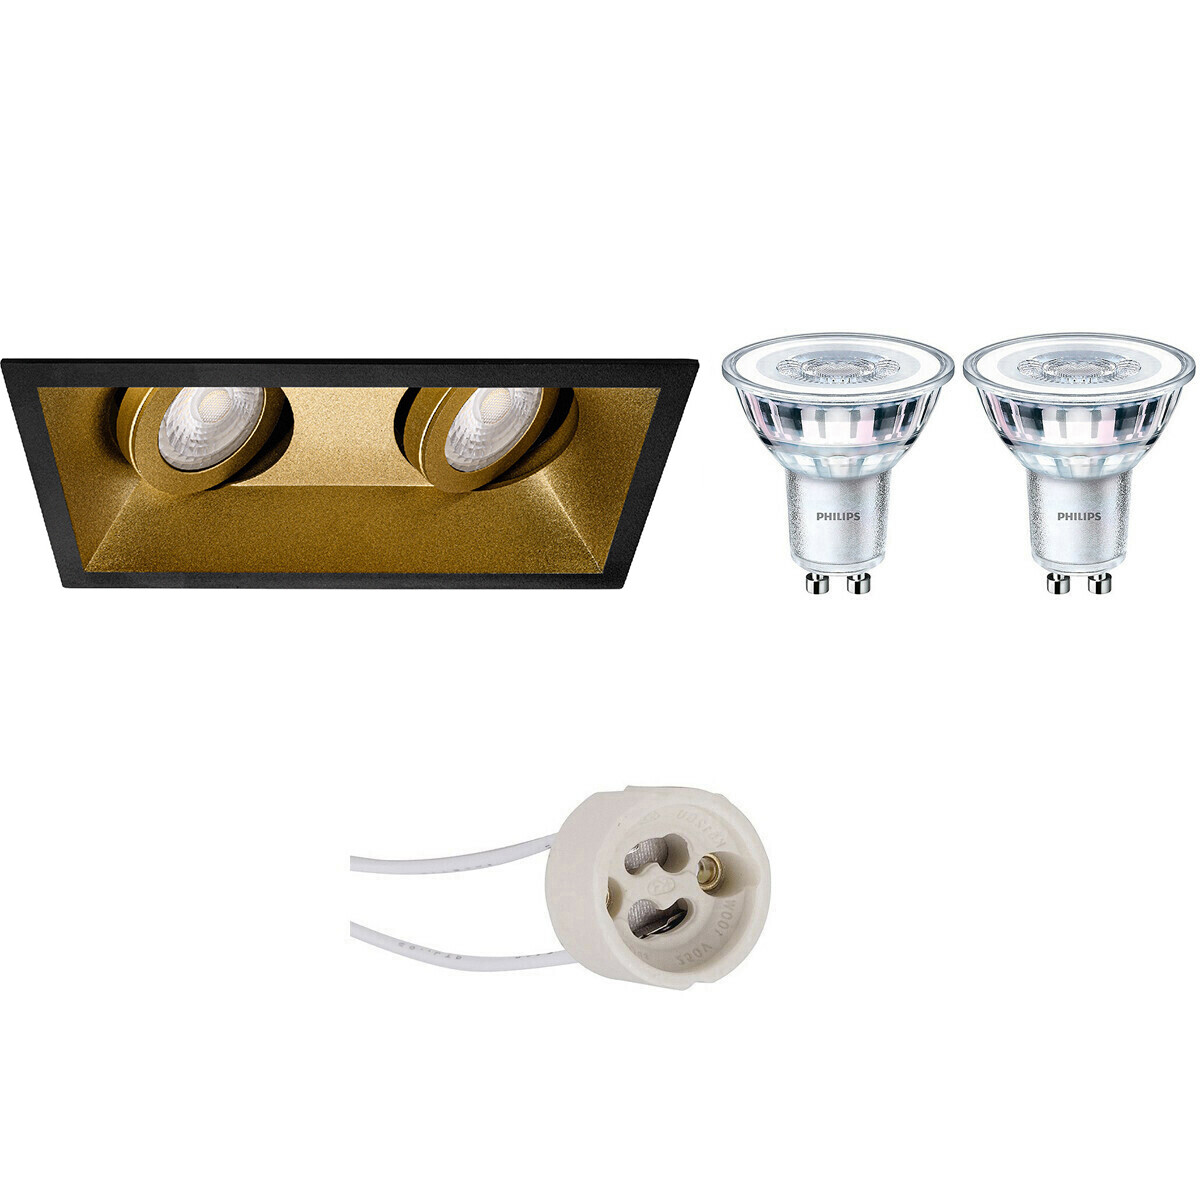 LED Spot Set - Pragmi Zano Pro - GU10 Fitting - Inbouw Rechthoek Dubbel - Mat Zwart/Goud - Kantelbaar - 185x93mm - Philips - CorePro 840 36D - 4W - Natuurlijk Wit 4000K - Dimbaar product afbeelding